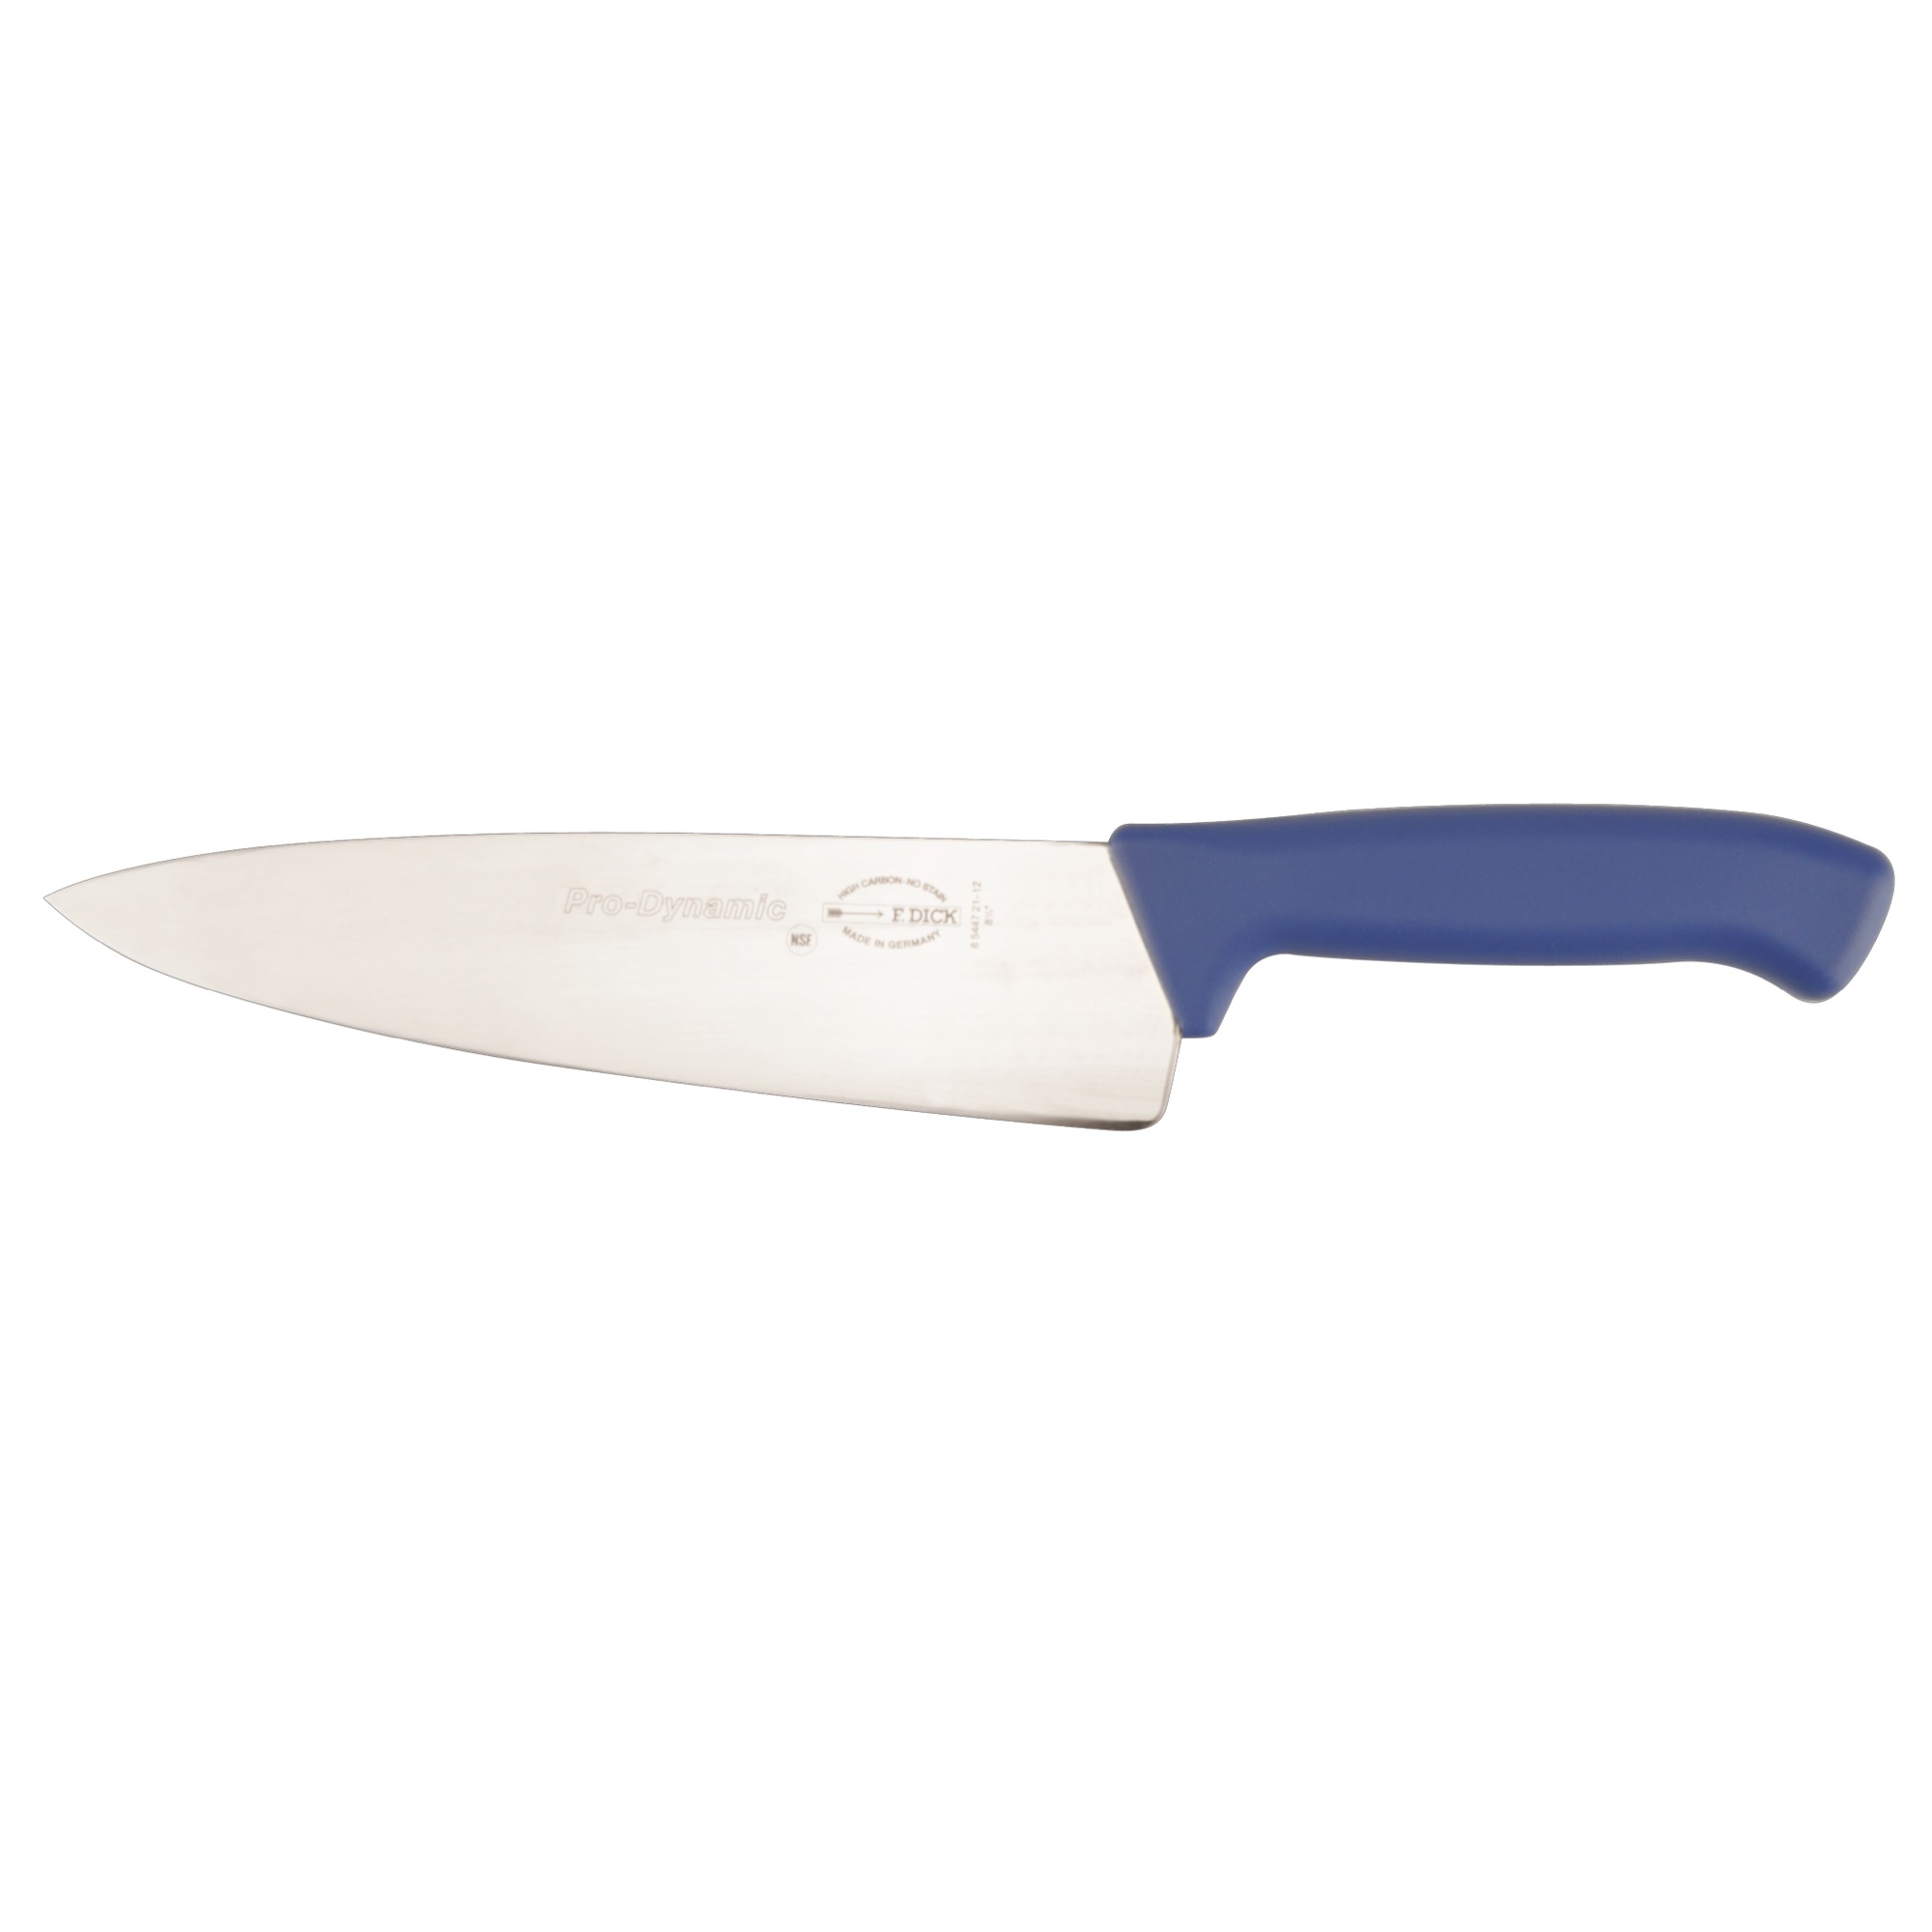 Dick nôž kuchársky 21cm modrý